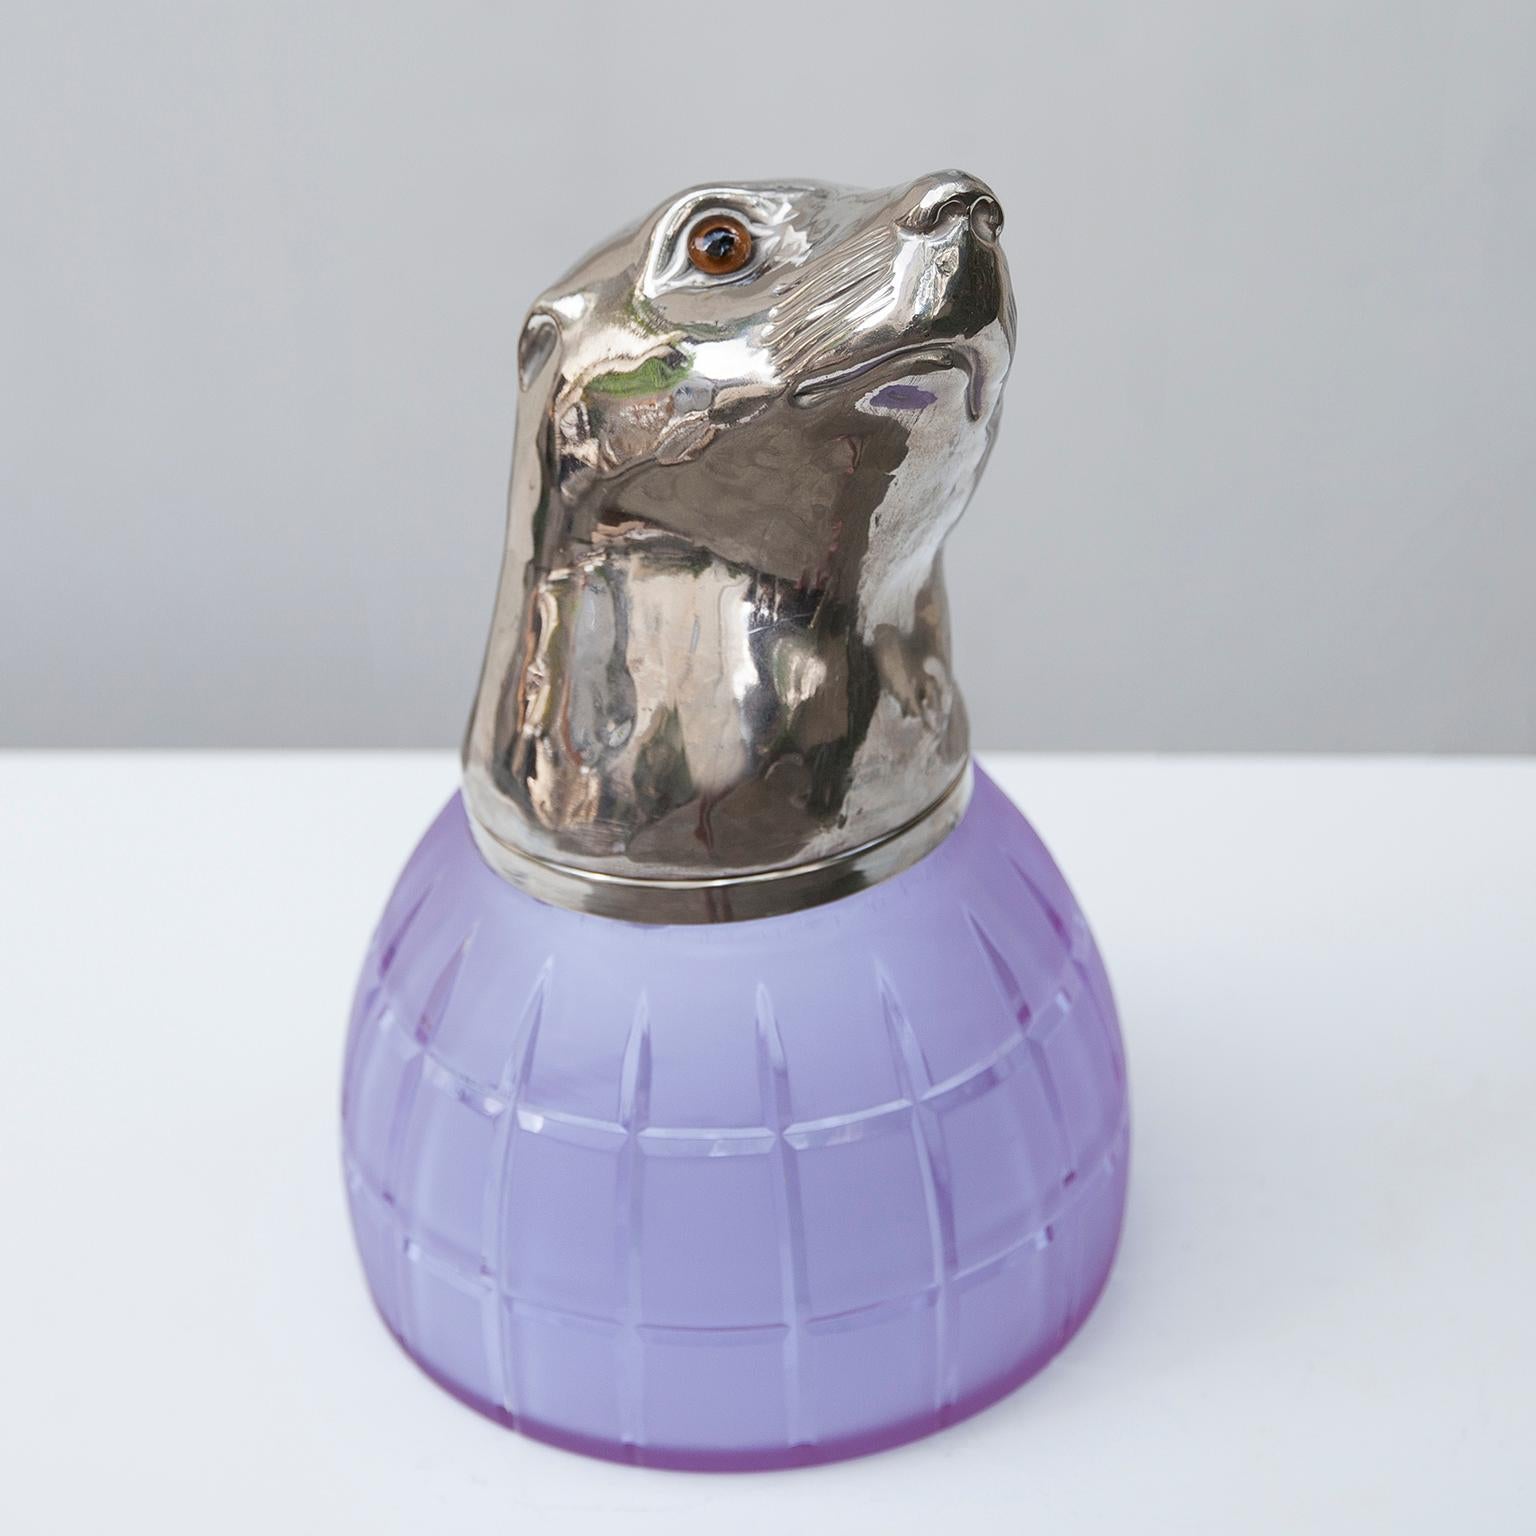 L'exquise sculpture de phoque de Franco Lapini est entièrement réalisée en métal plaqué argent. Sa surface est légèrement texturée pour lui donner un aspect organique, le verre de Murano violet contrastant de manière saisissante avec l'argent. Vous